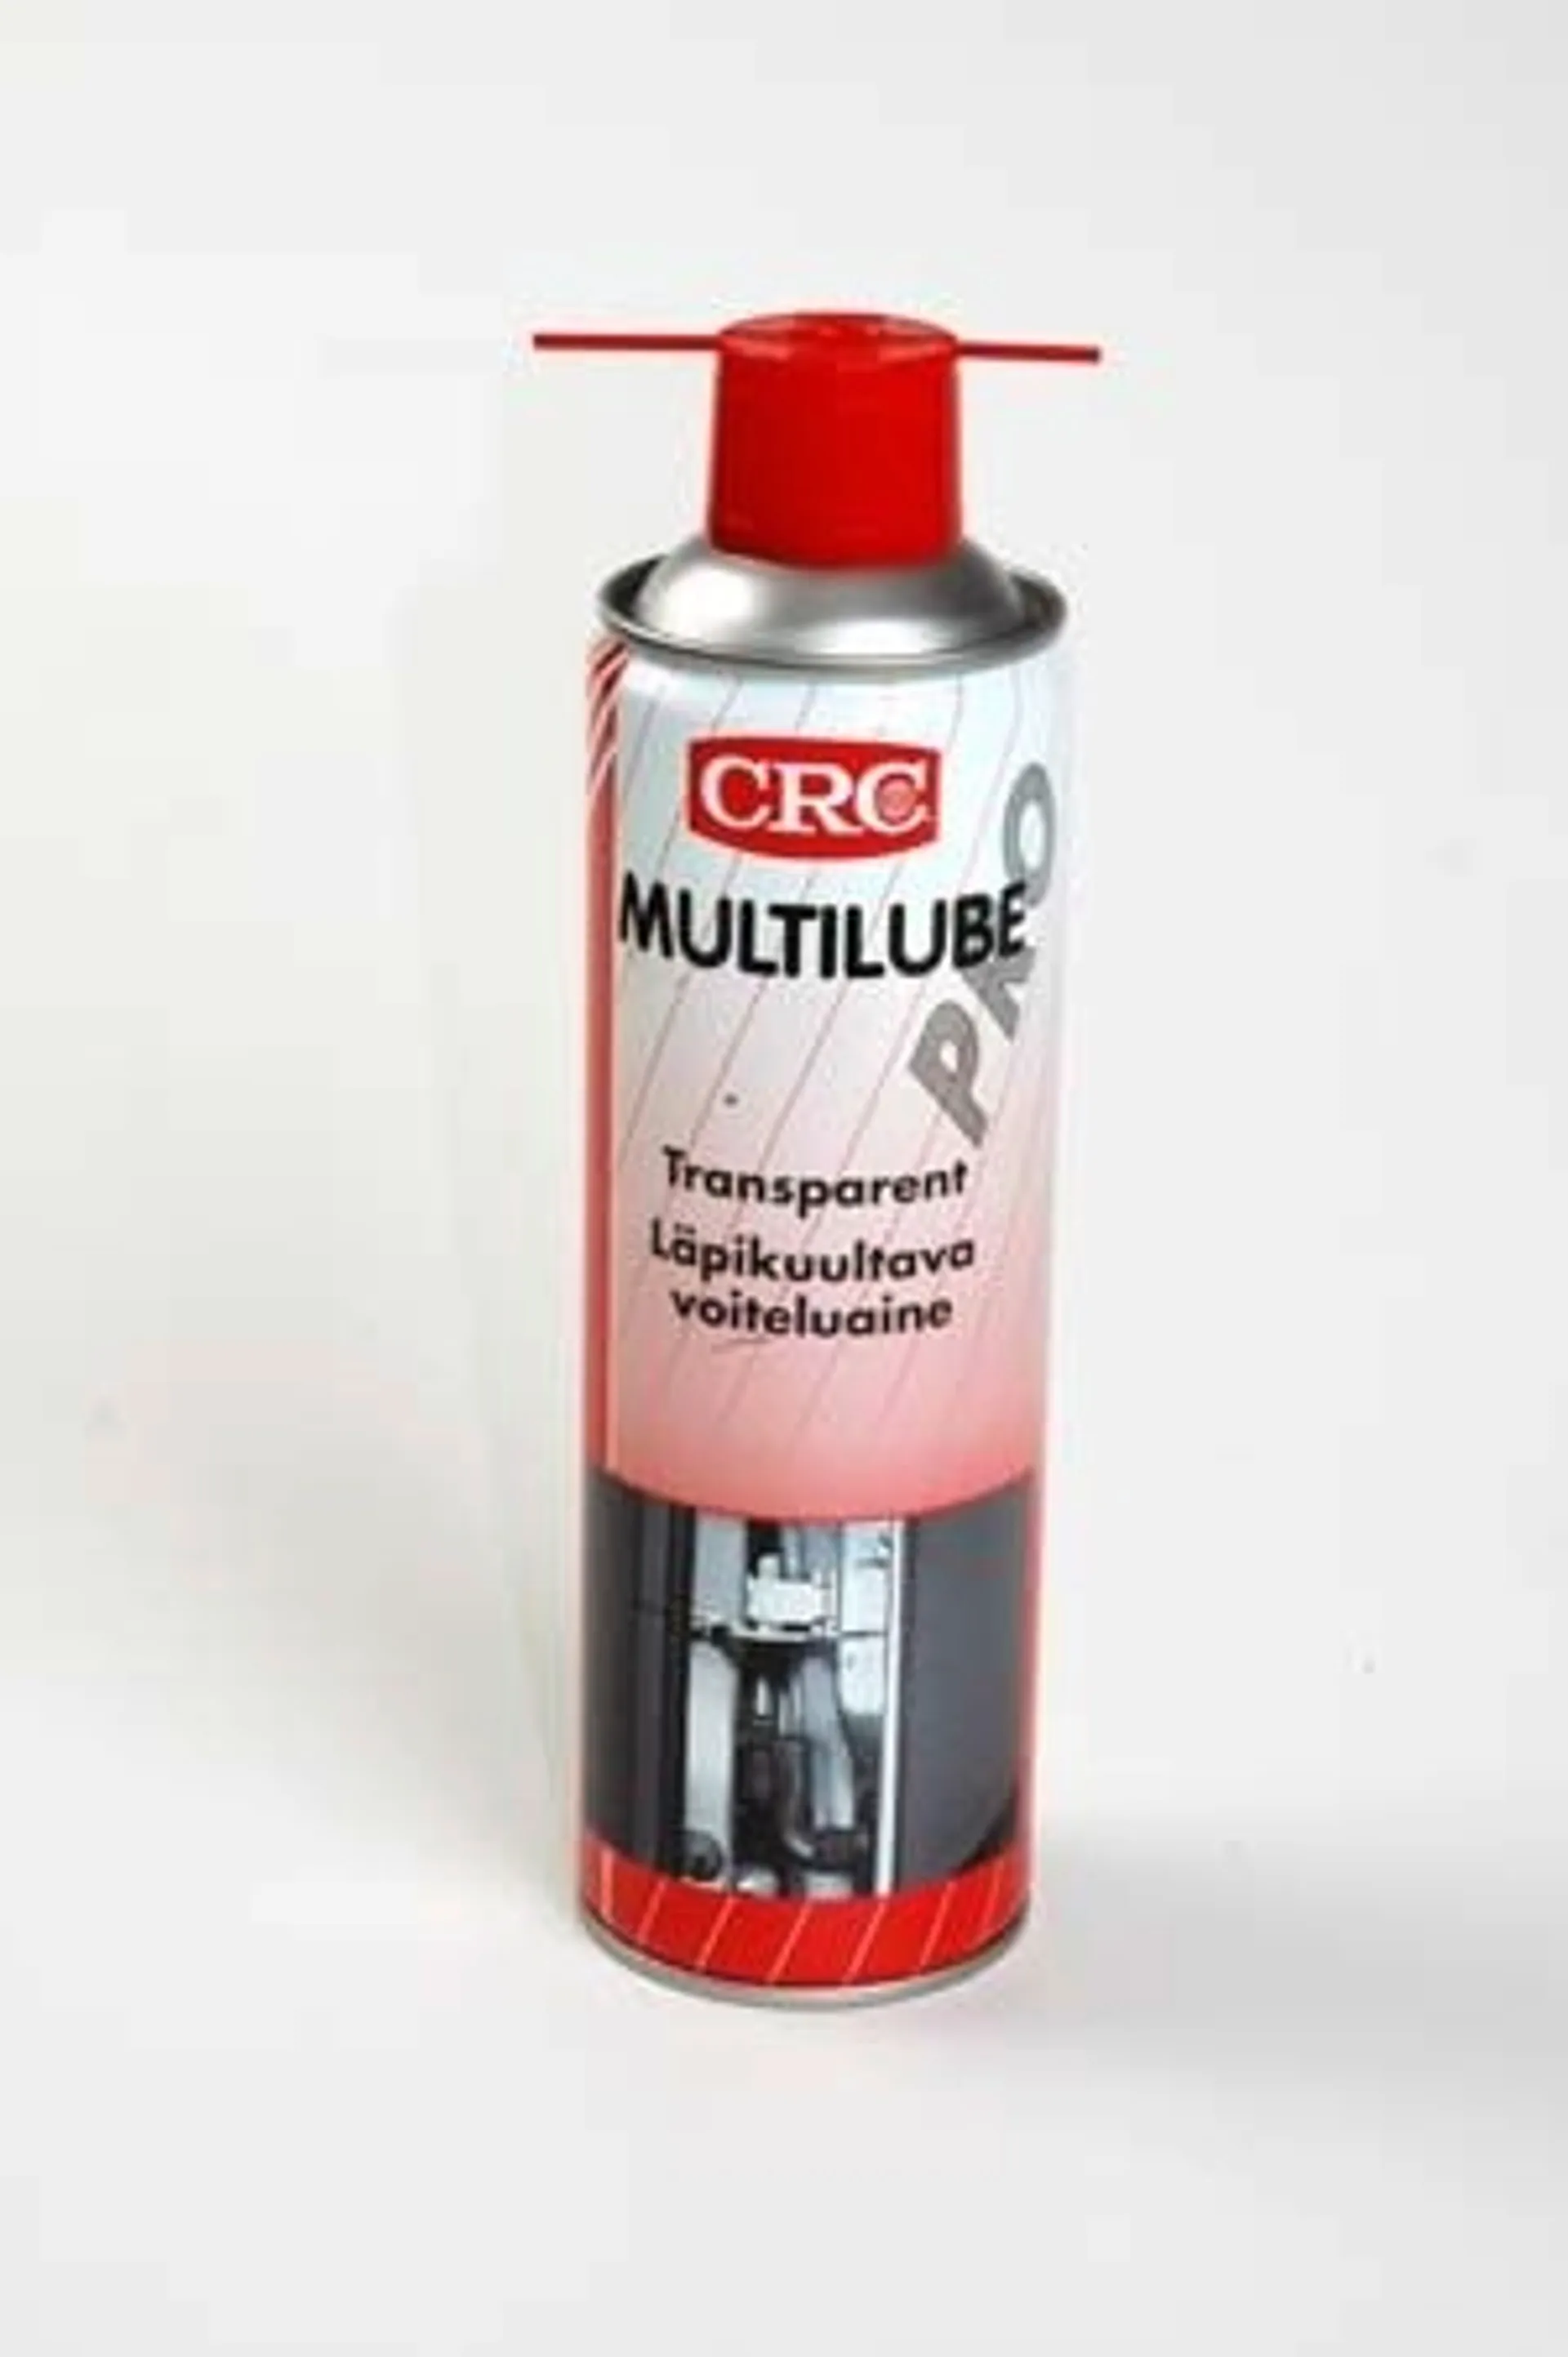 CRC 500ml Multilube Pro voiteluspray